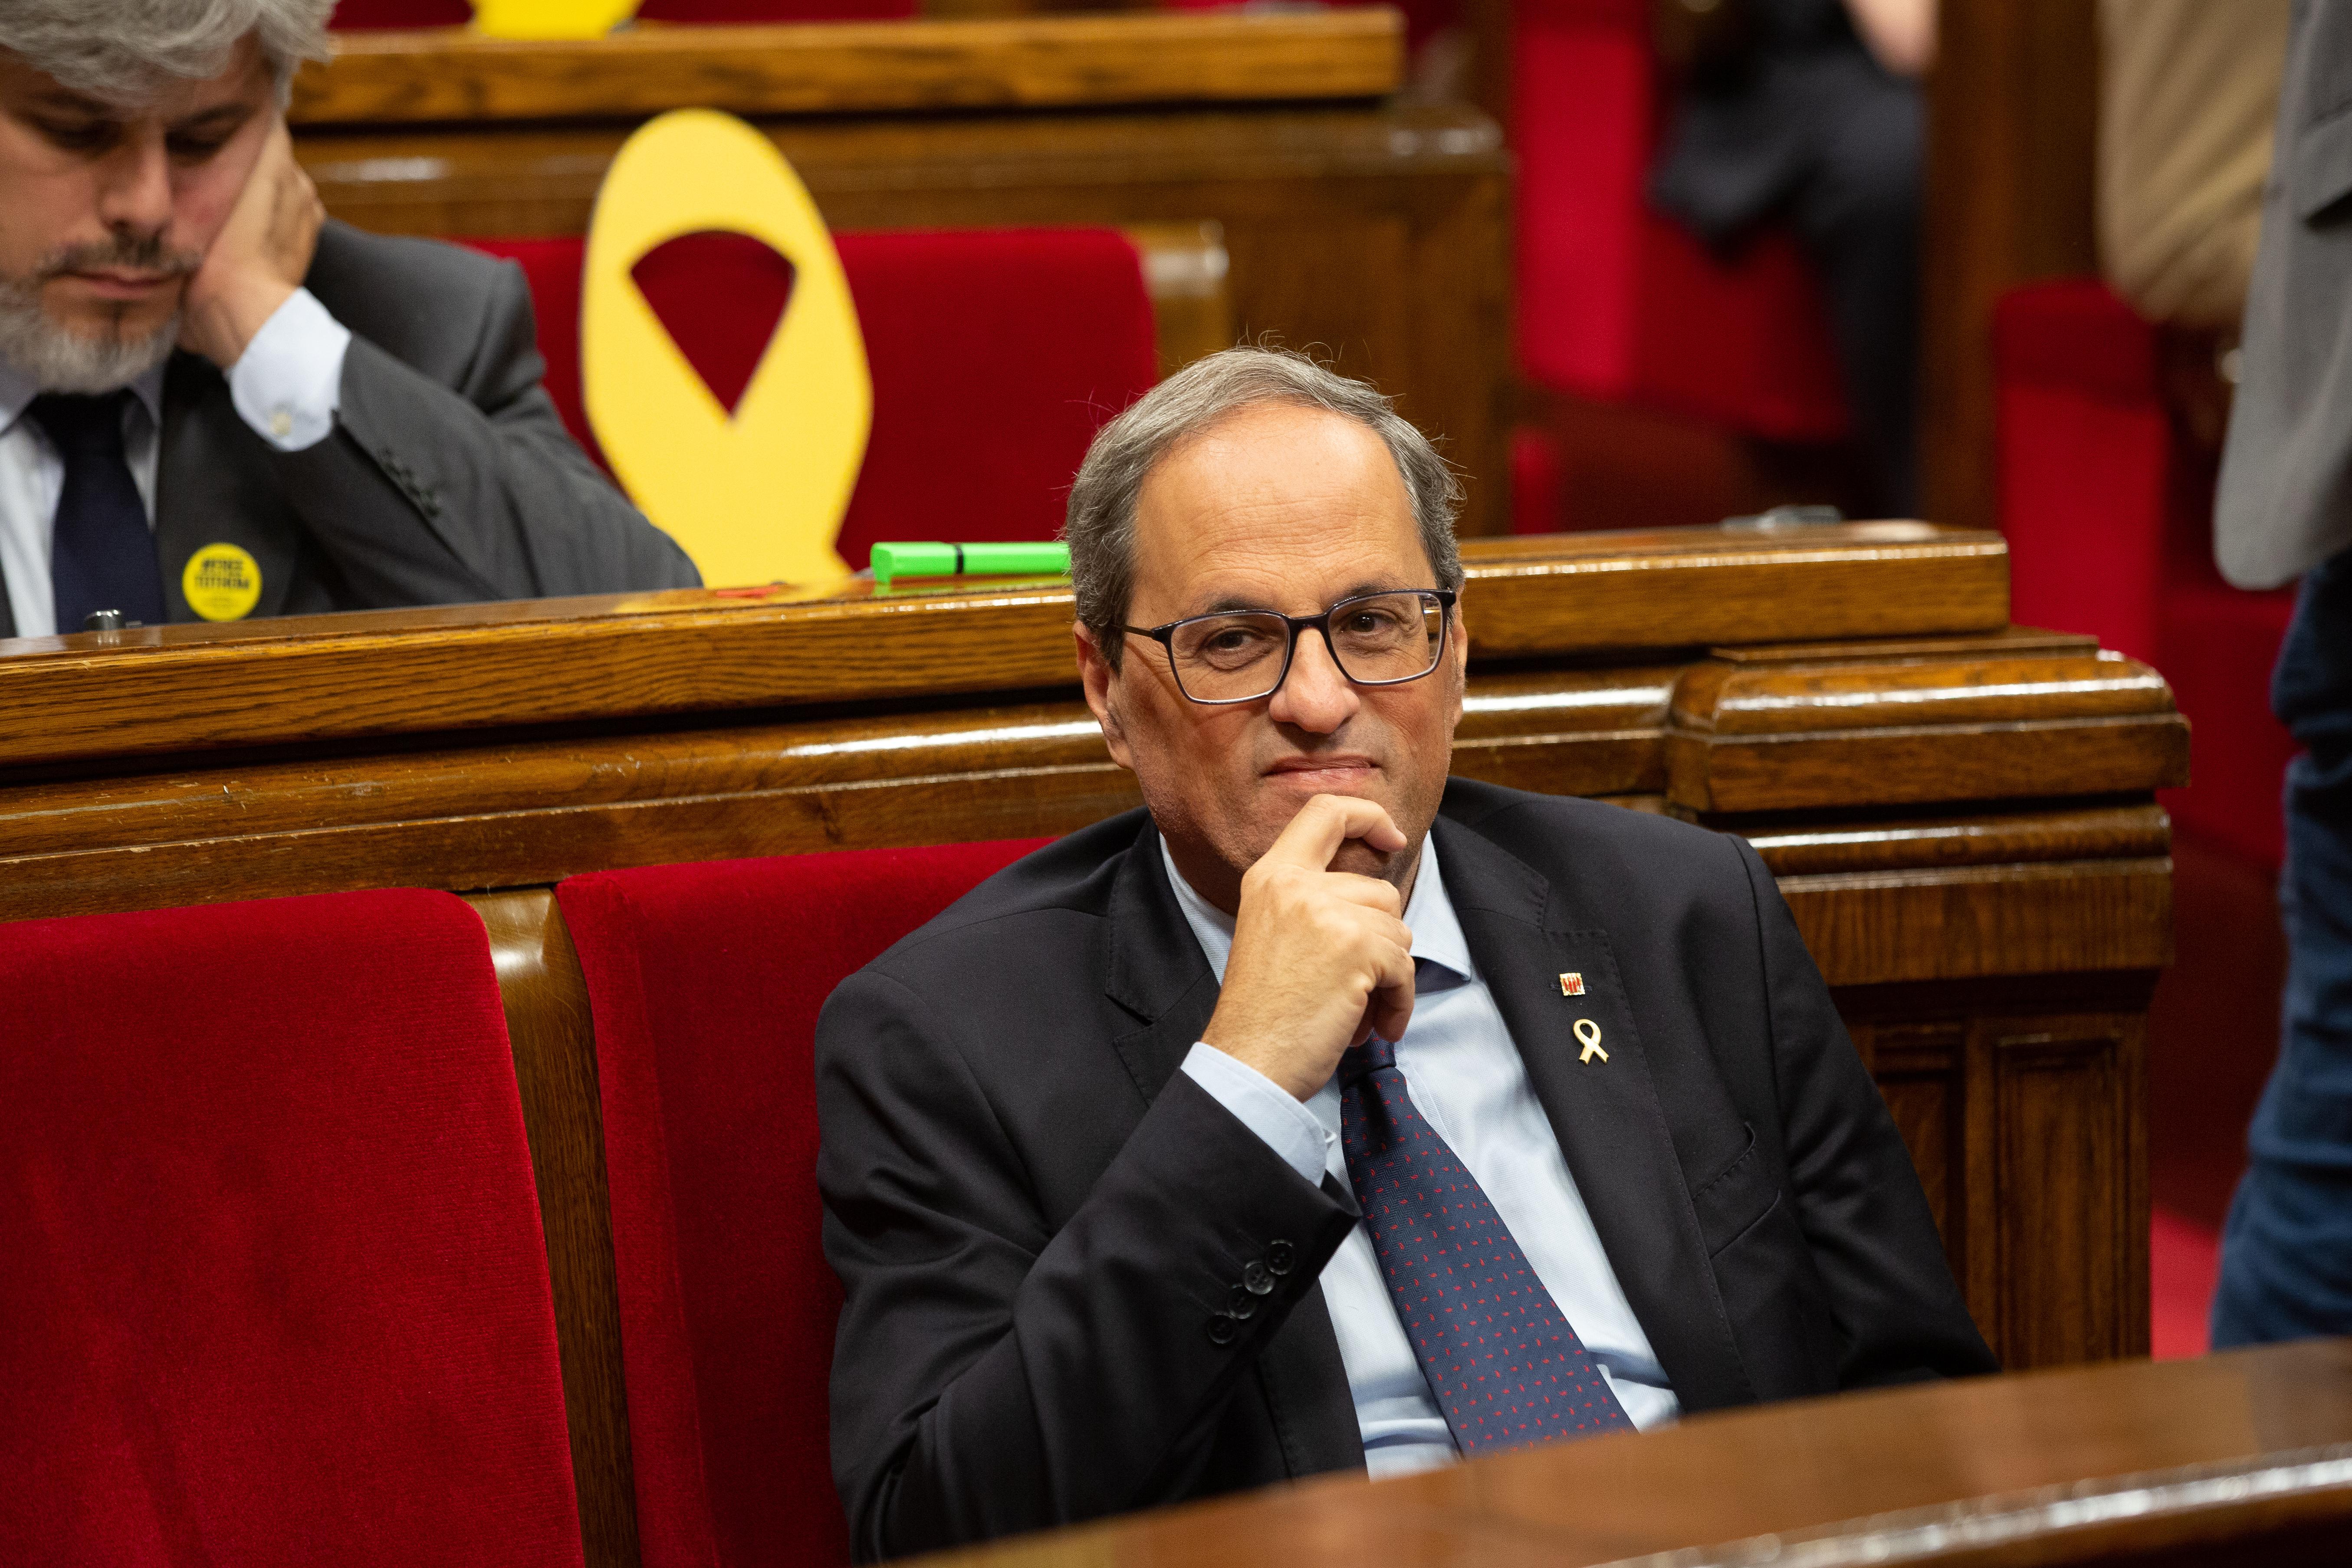 El president de la Generalitat, Quim Torra, sentado en su escaño